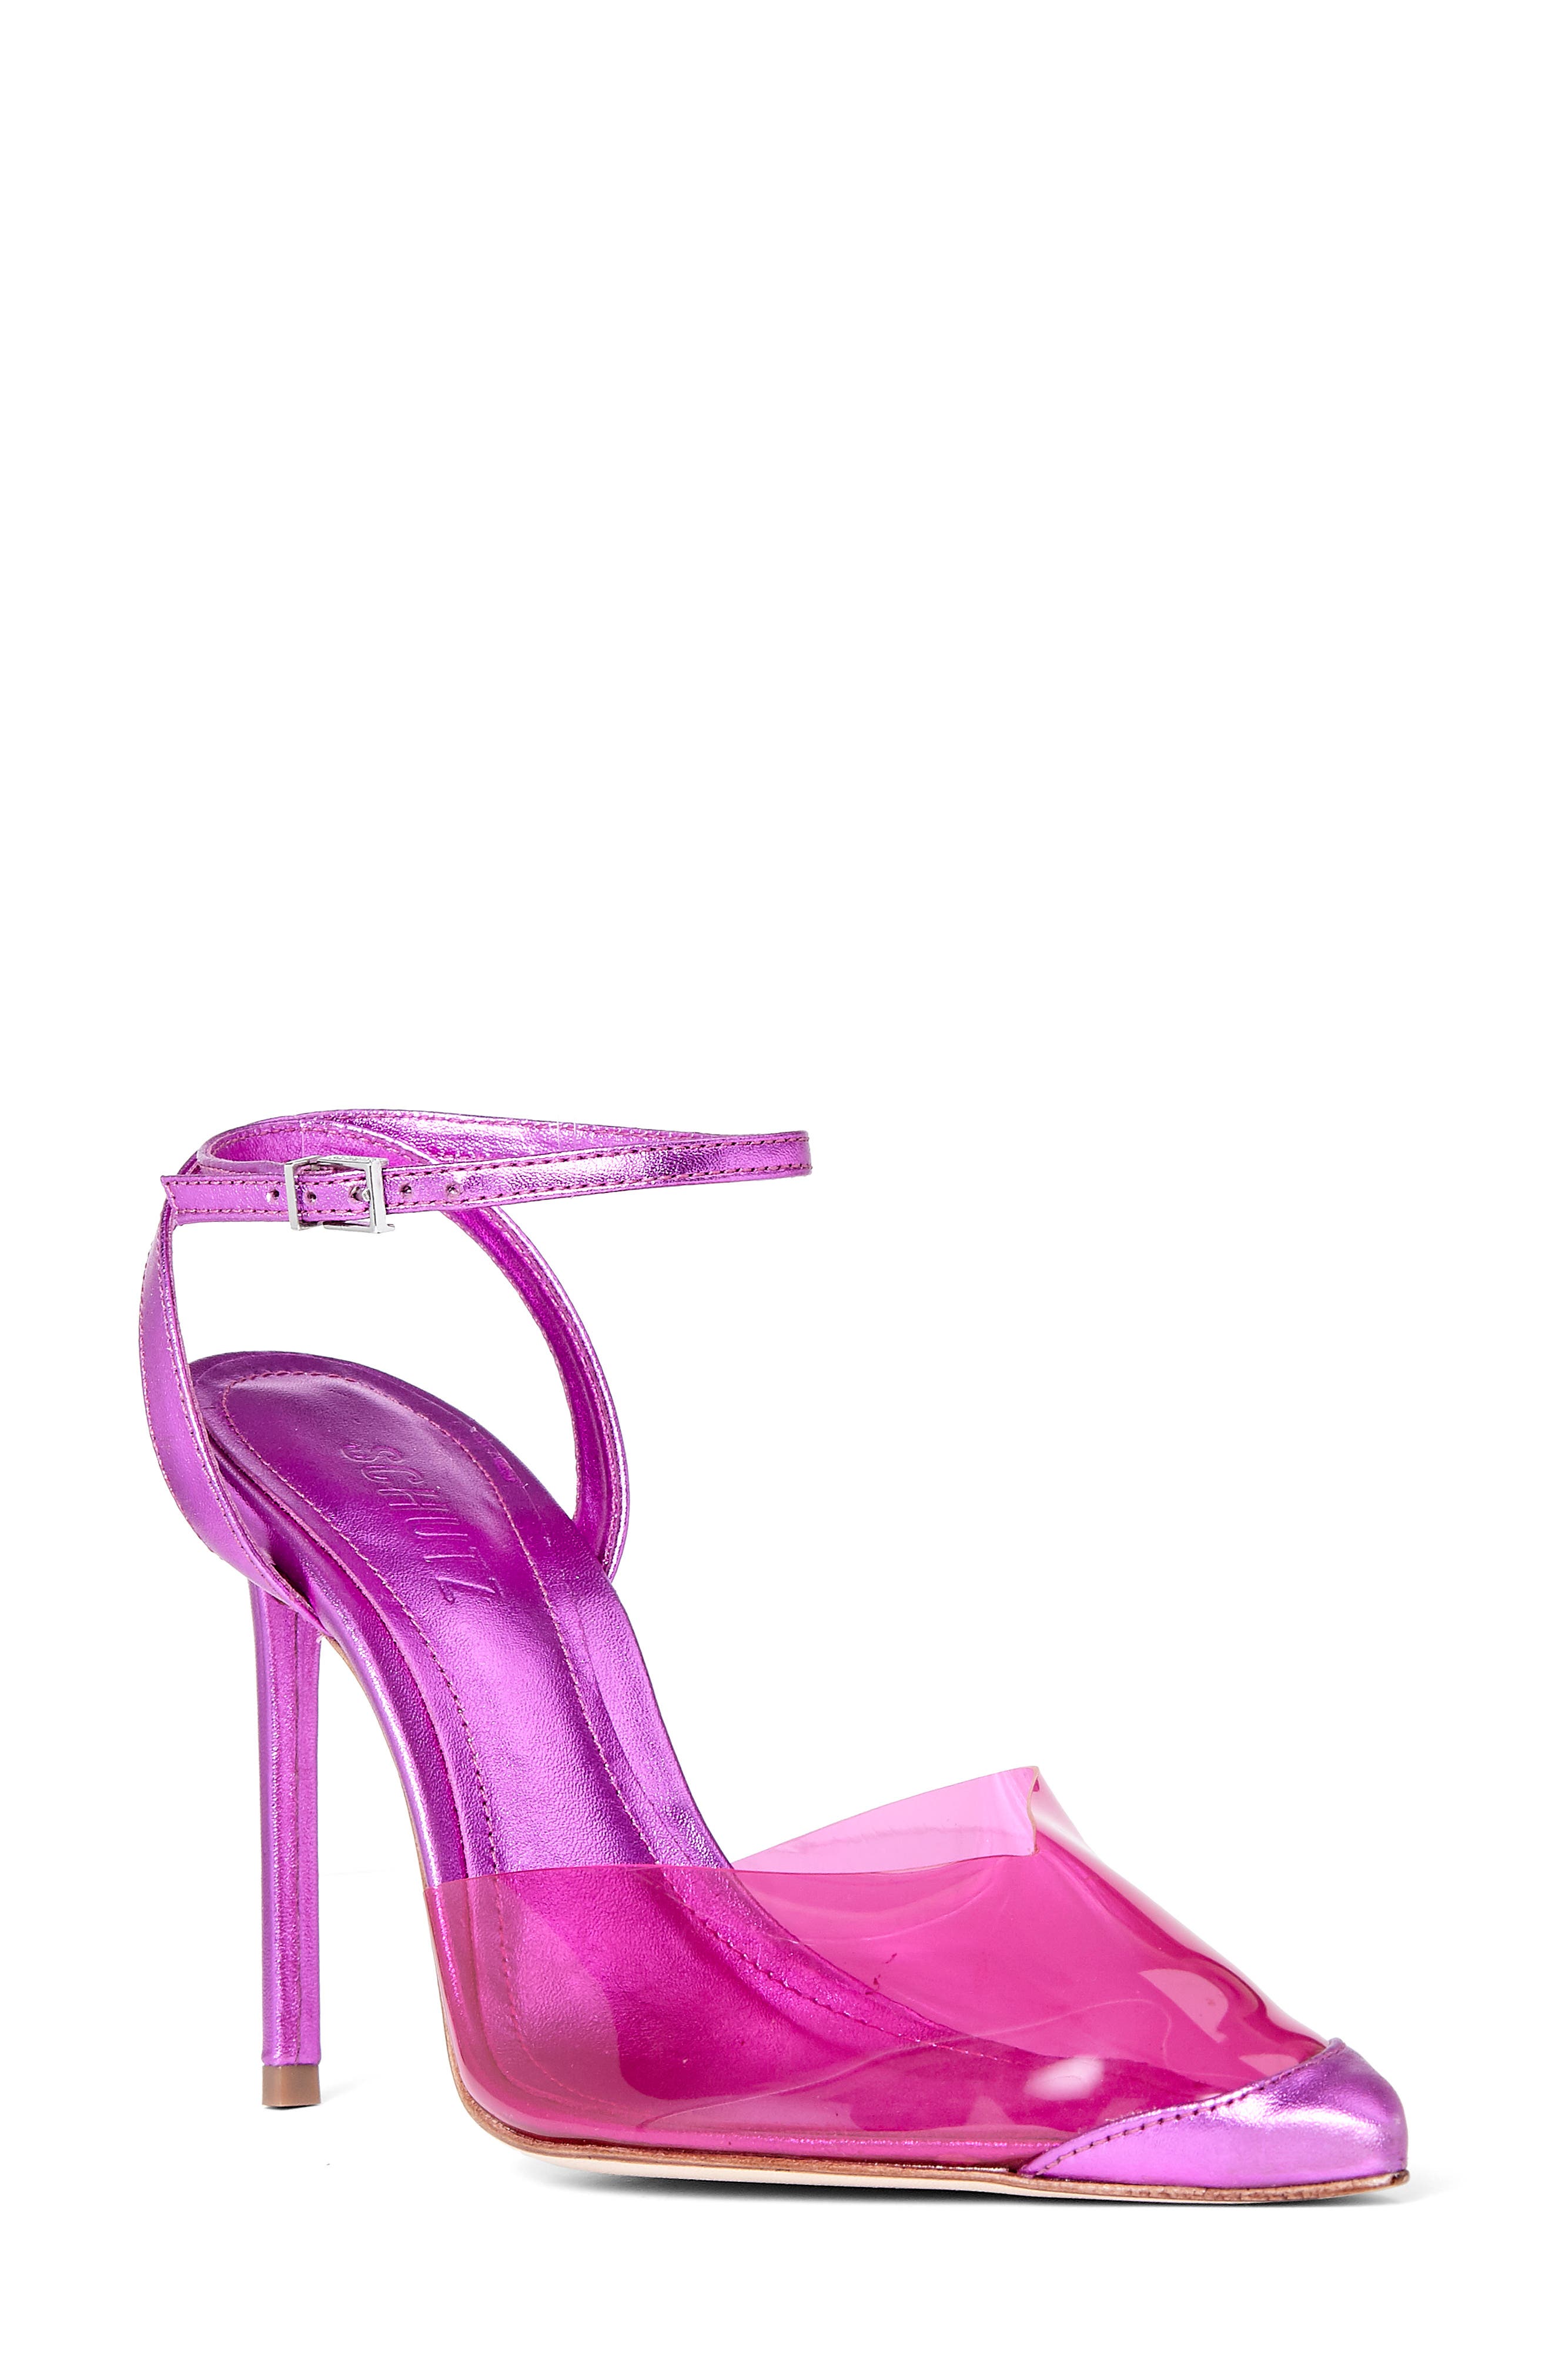 schutz pink heels